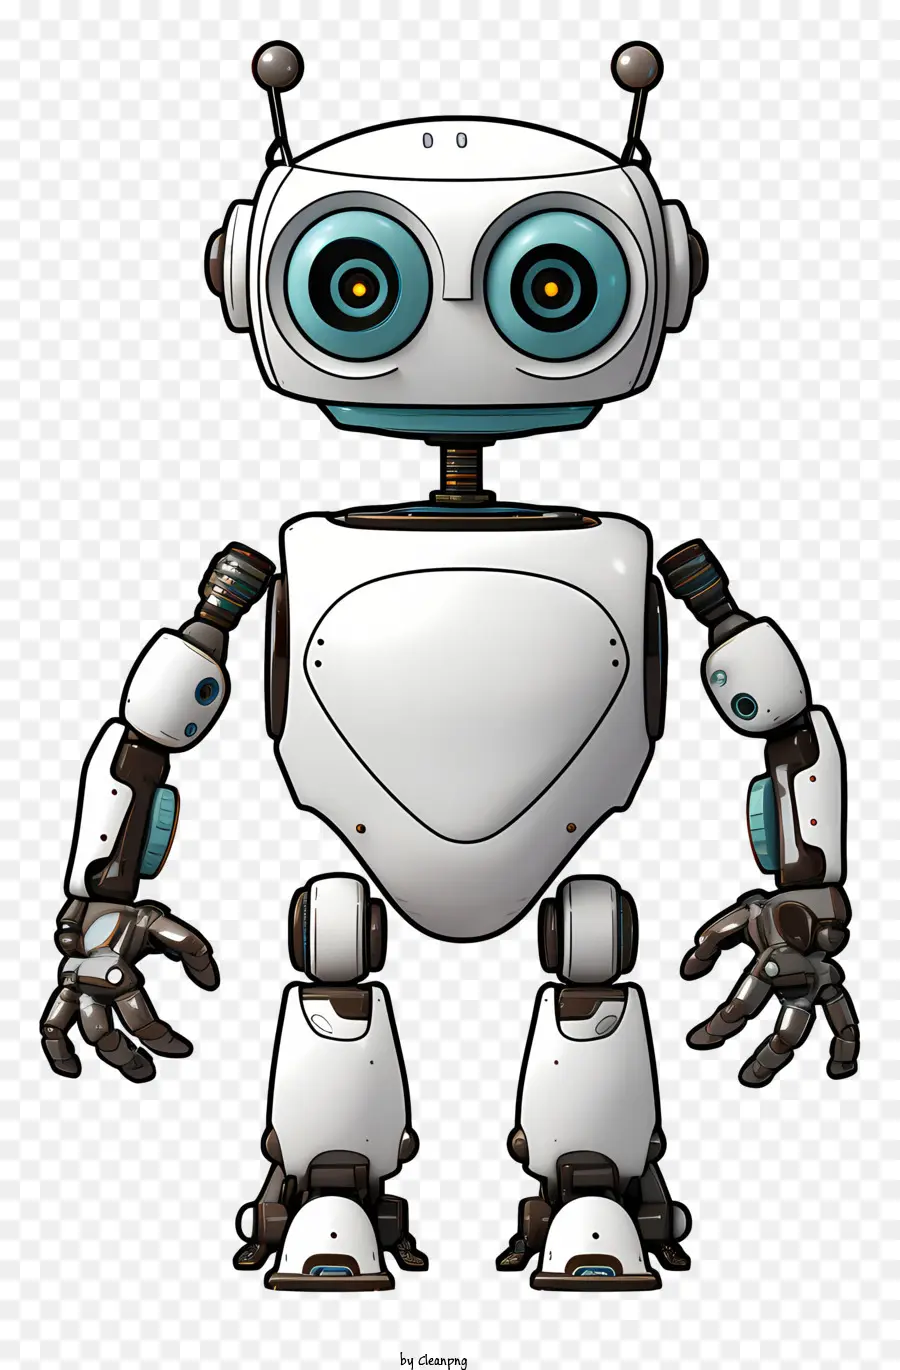 Roboter weiß und schwarze blaue Augen großer Mund auf zwei Beinen stehen - Lächelnder weißer und schwarzer Roboter mit blauen Merkmalen